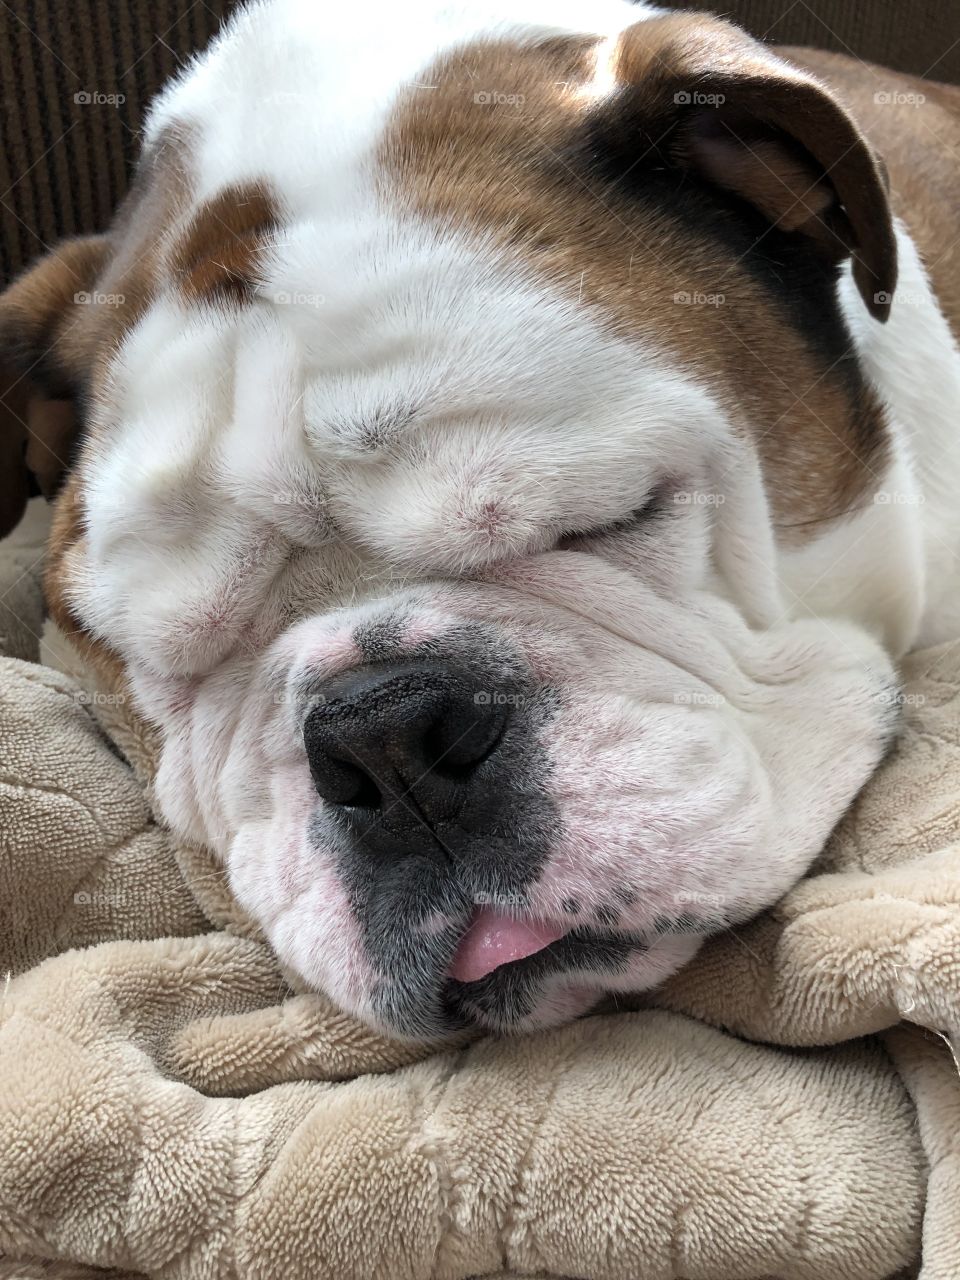 Sleeping English Bulldog with his tongue out 